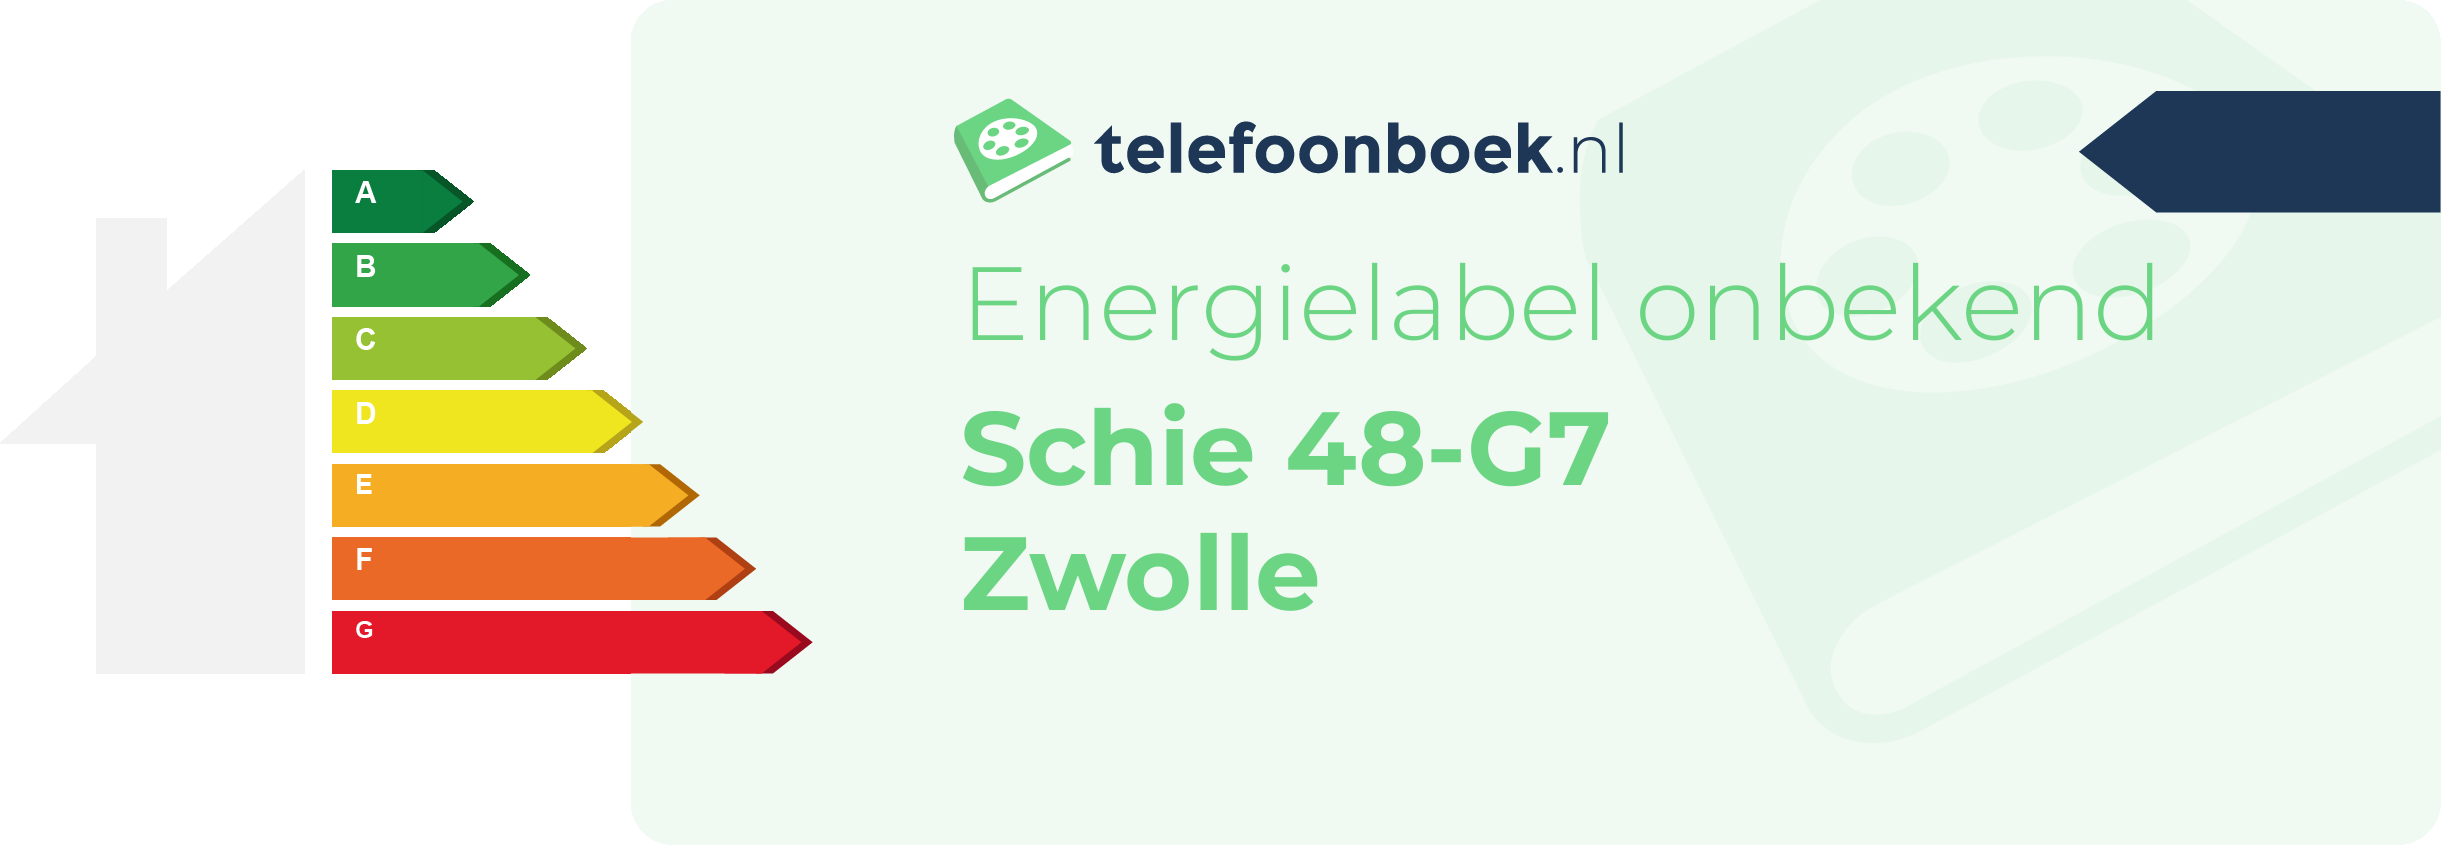 Energielabel Schie 48-G7 Zwolle